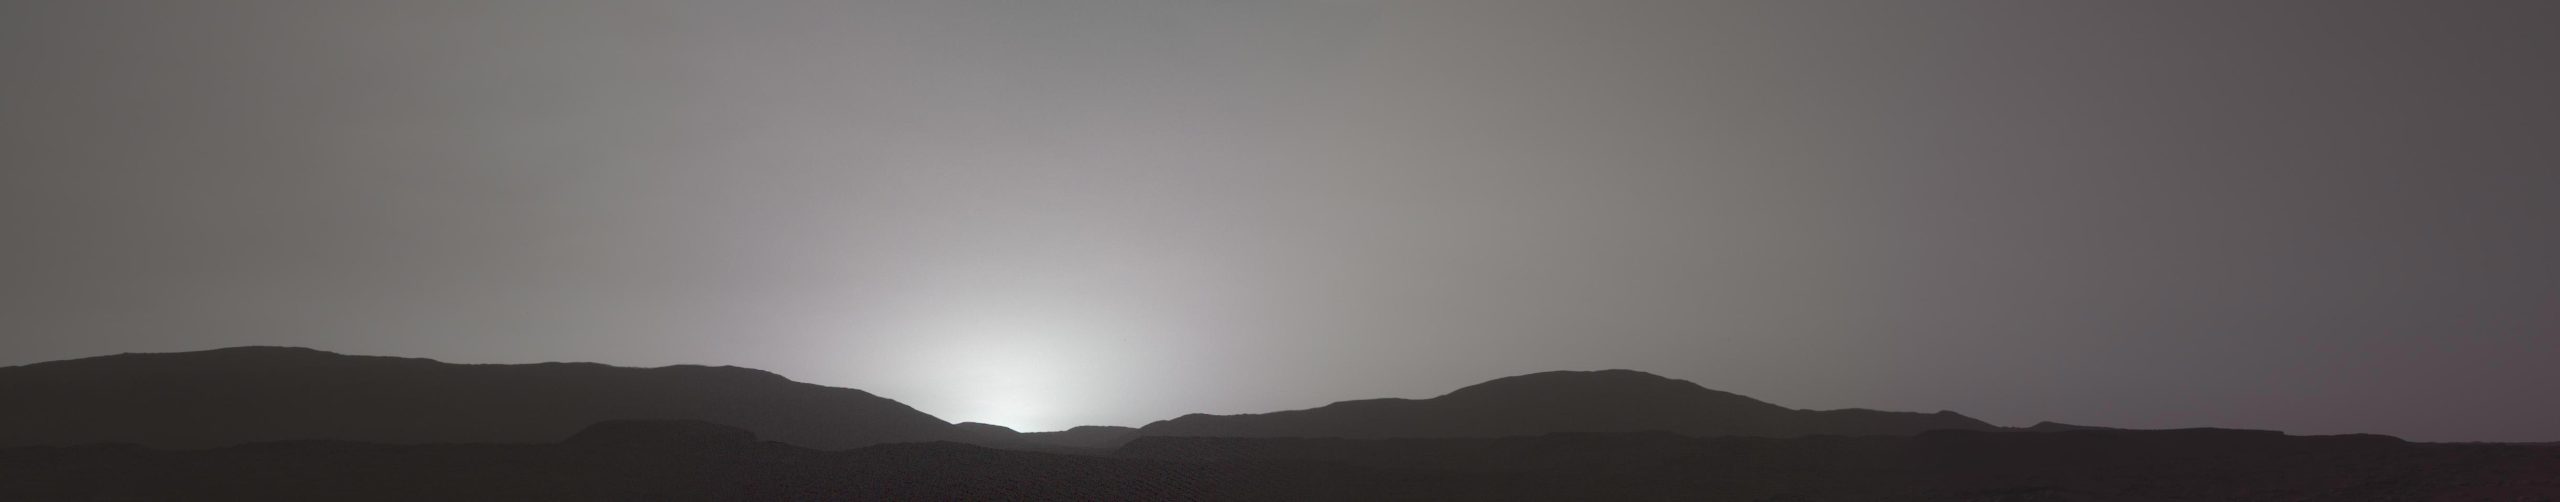 Первое изображение марсианского заката на Mastcam-Z